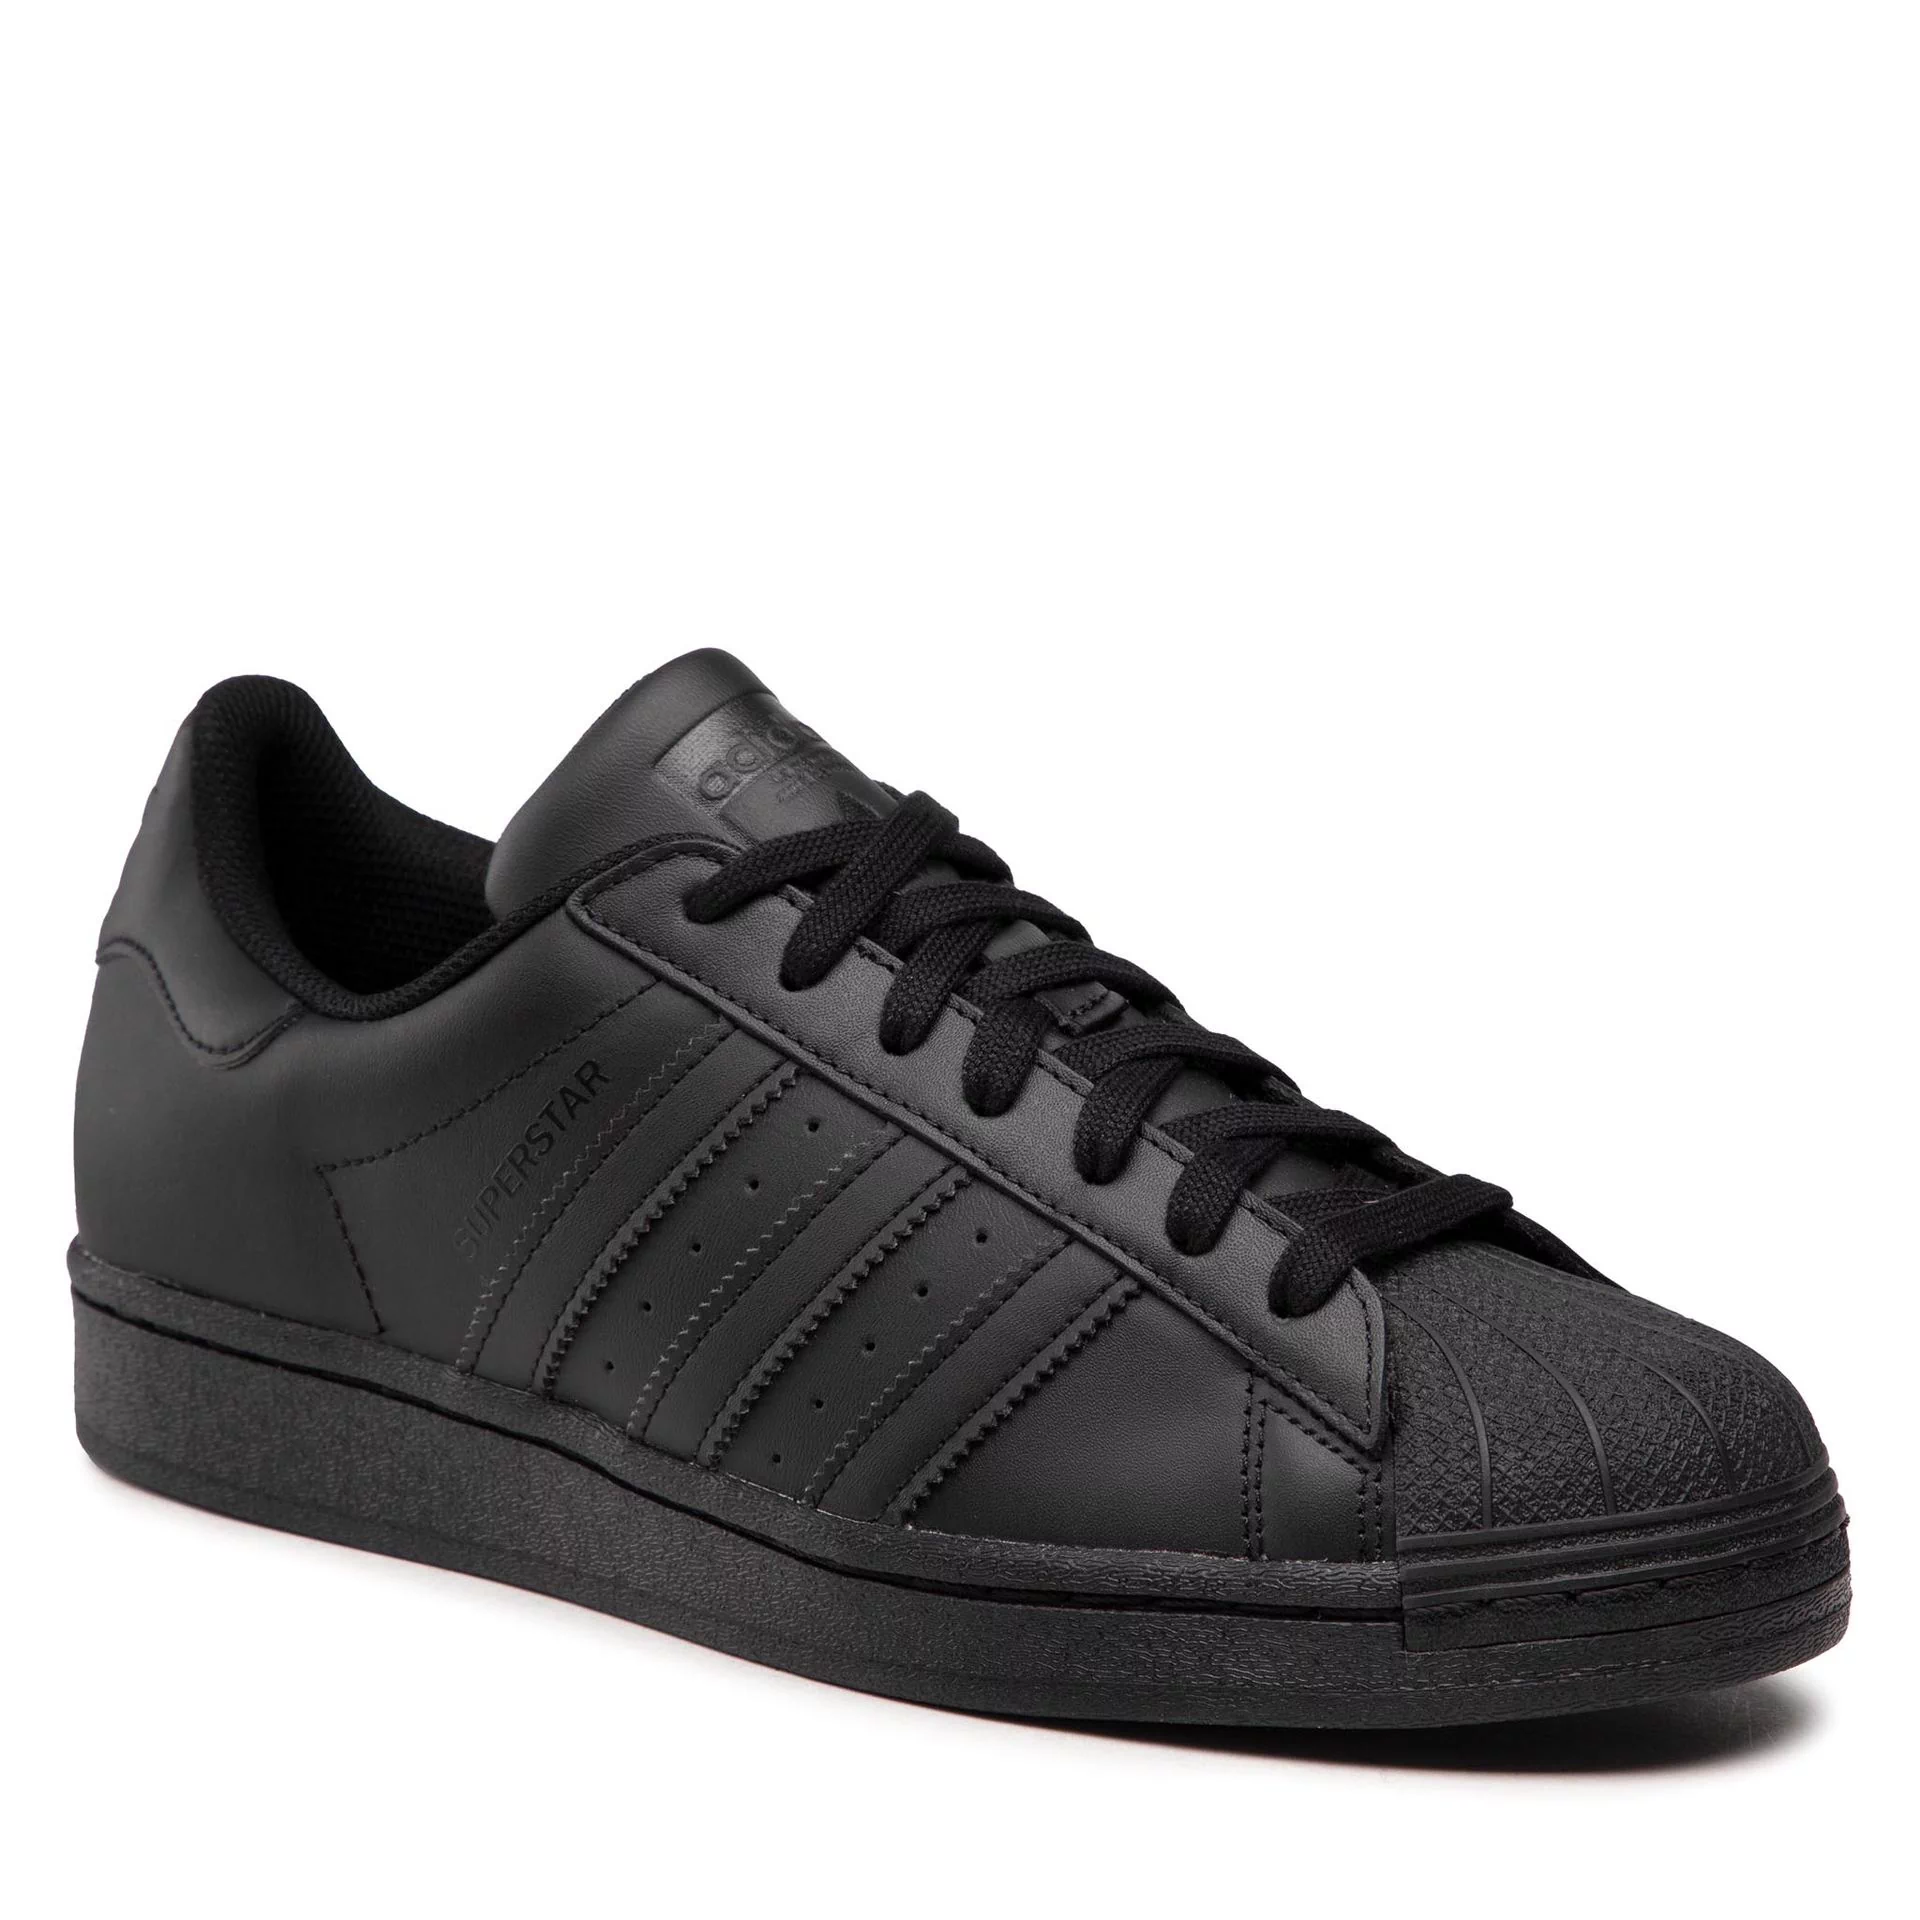 Adidas Superstar Shoes EG4960 - Ceny i opinie na Skapiec.pl